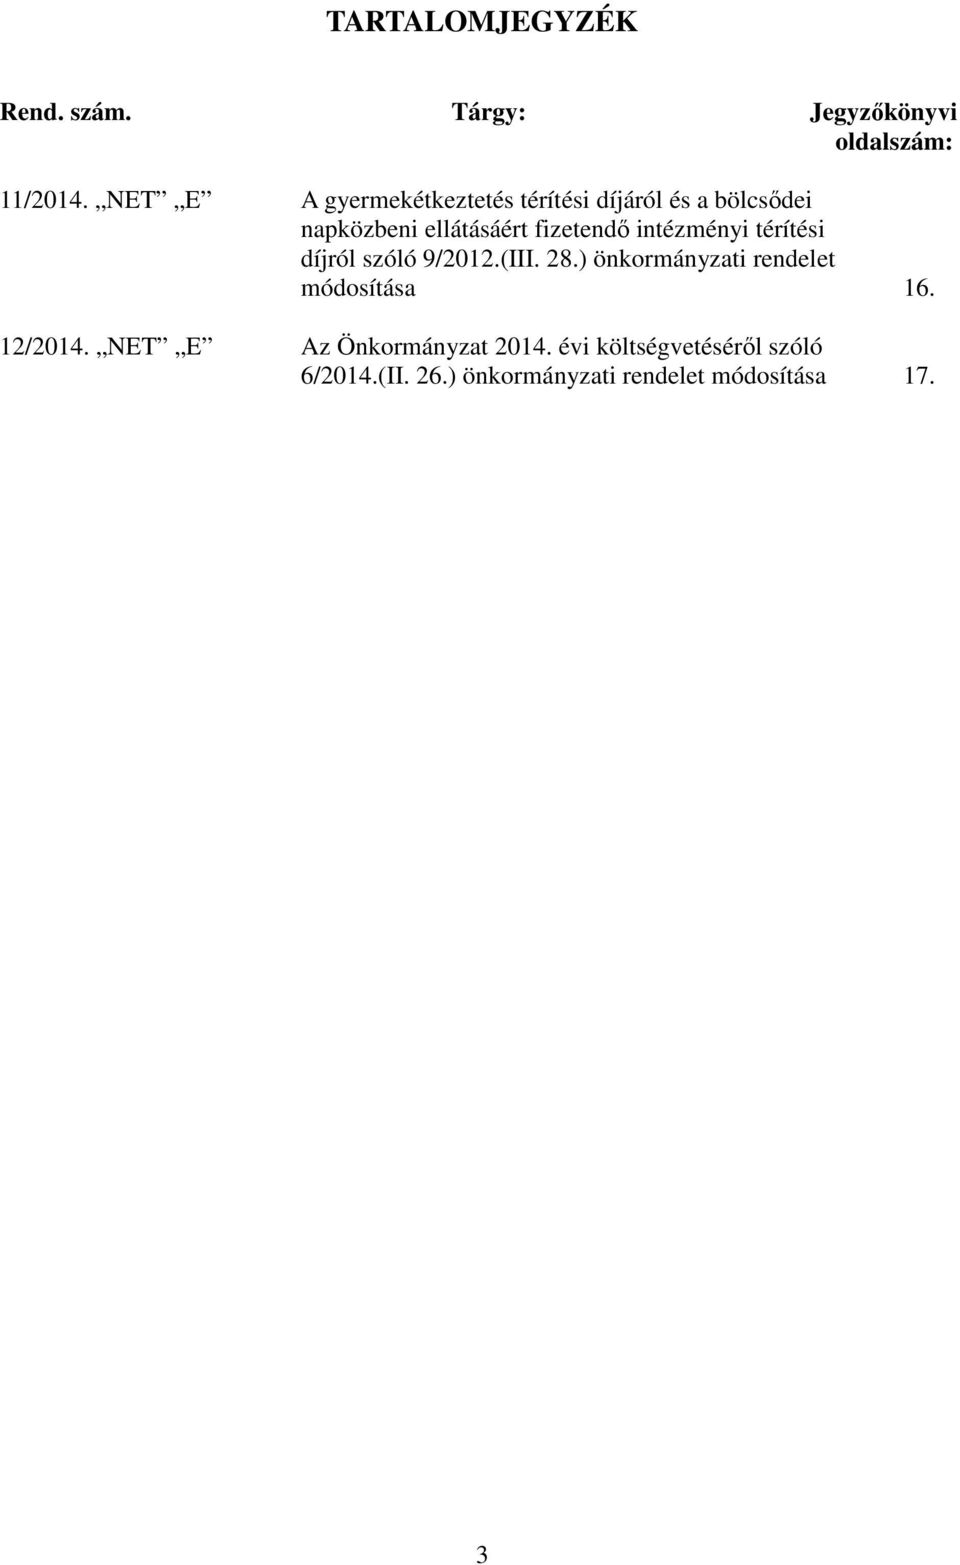 intézményi térítési díjról szóló 9/2012.(III. 28.) önkormányzati rendelet módosítása 16.